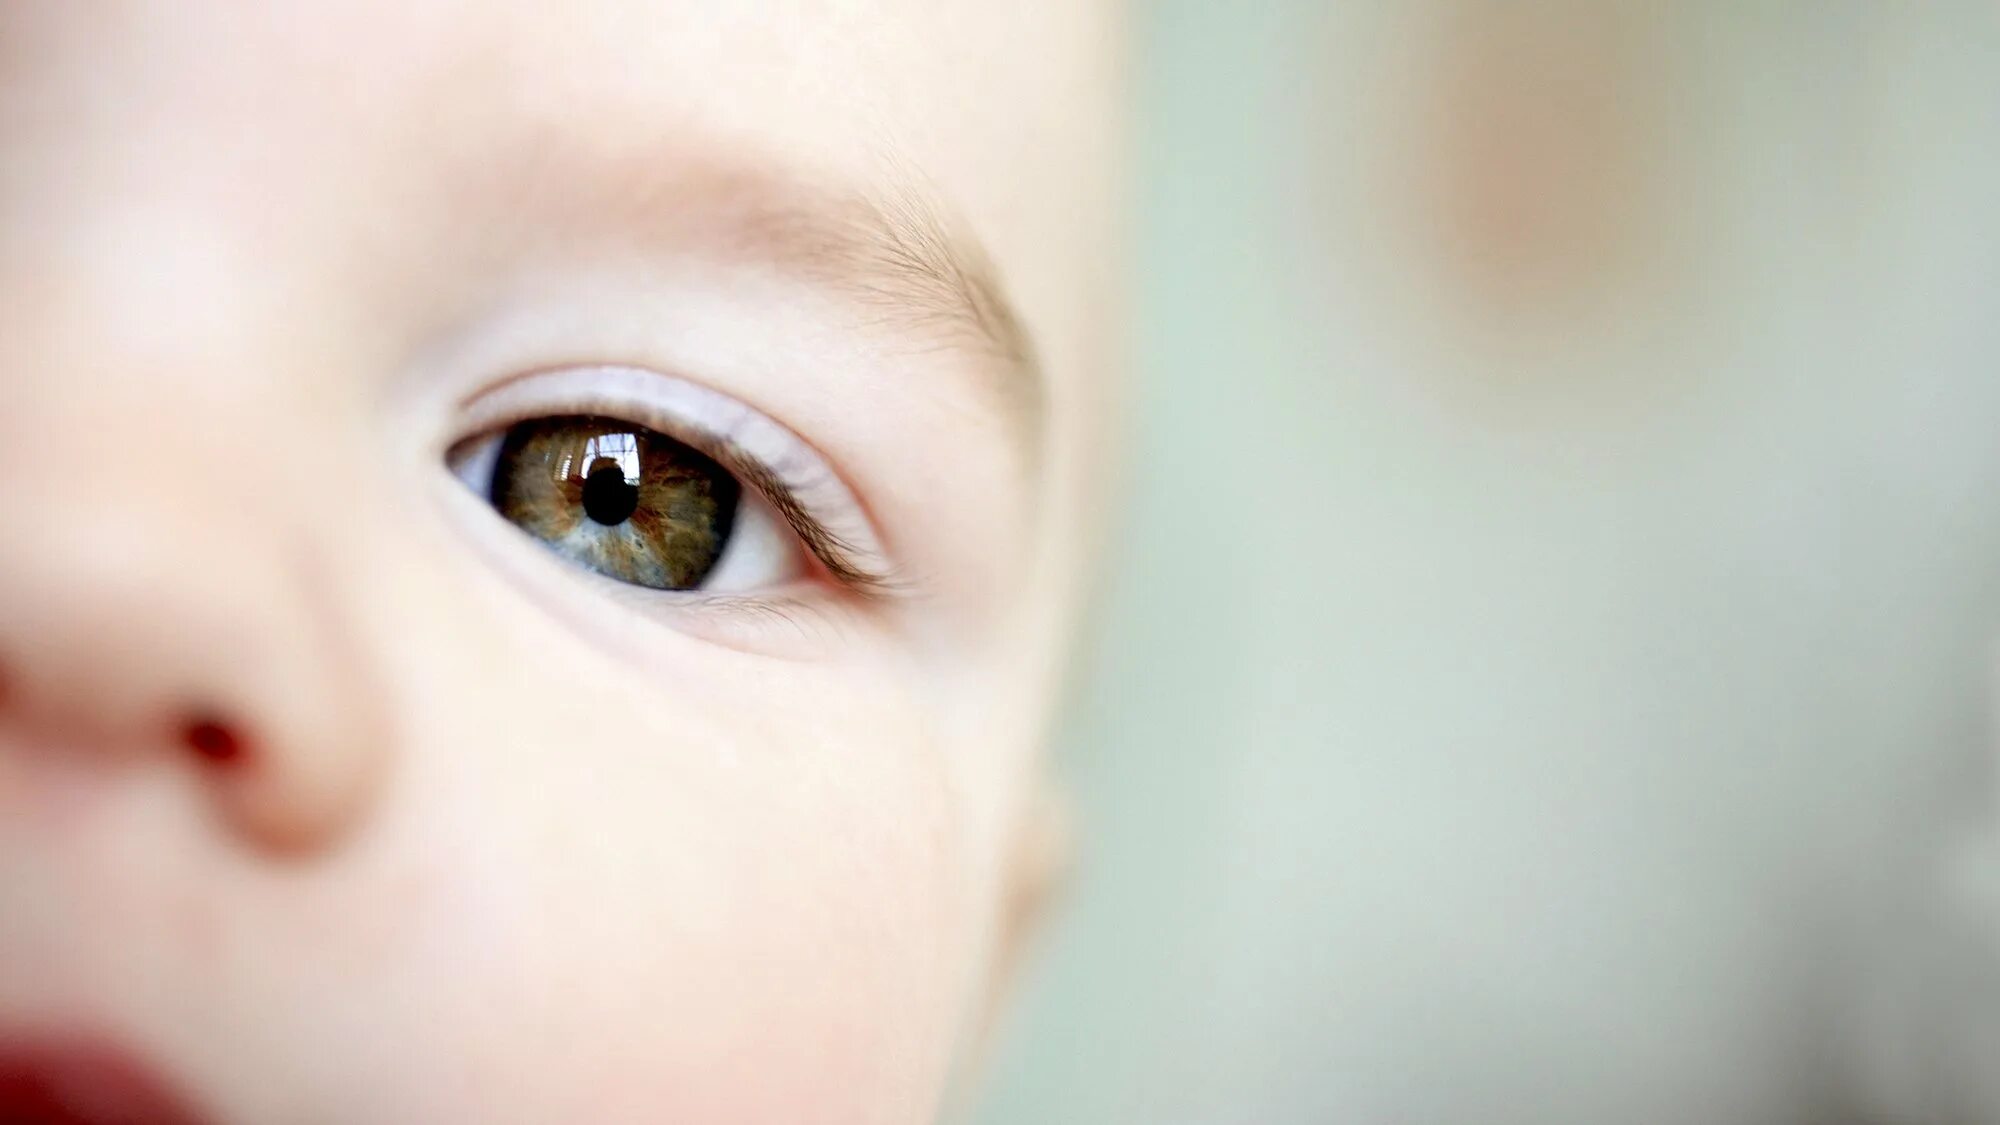 Baby eye песня. Глаза ребенка. Глаза у новорожденных. Дети с голубыми глазами. Серо-карие глаза у ребенка.